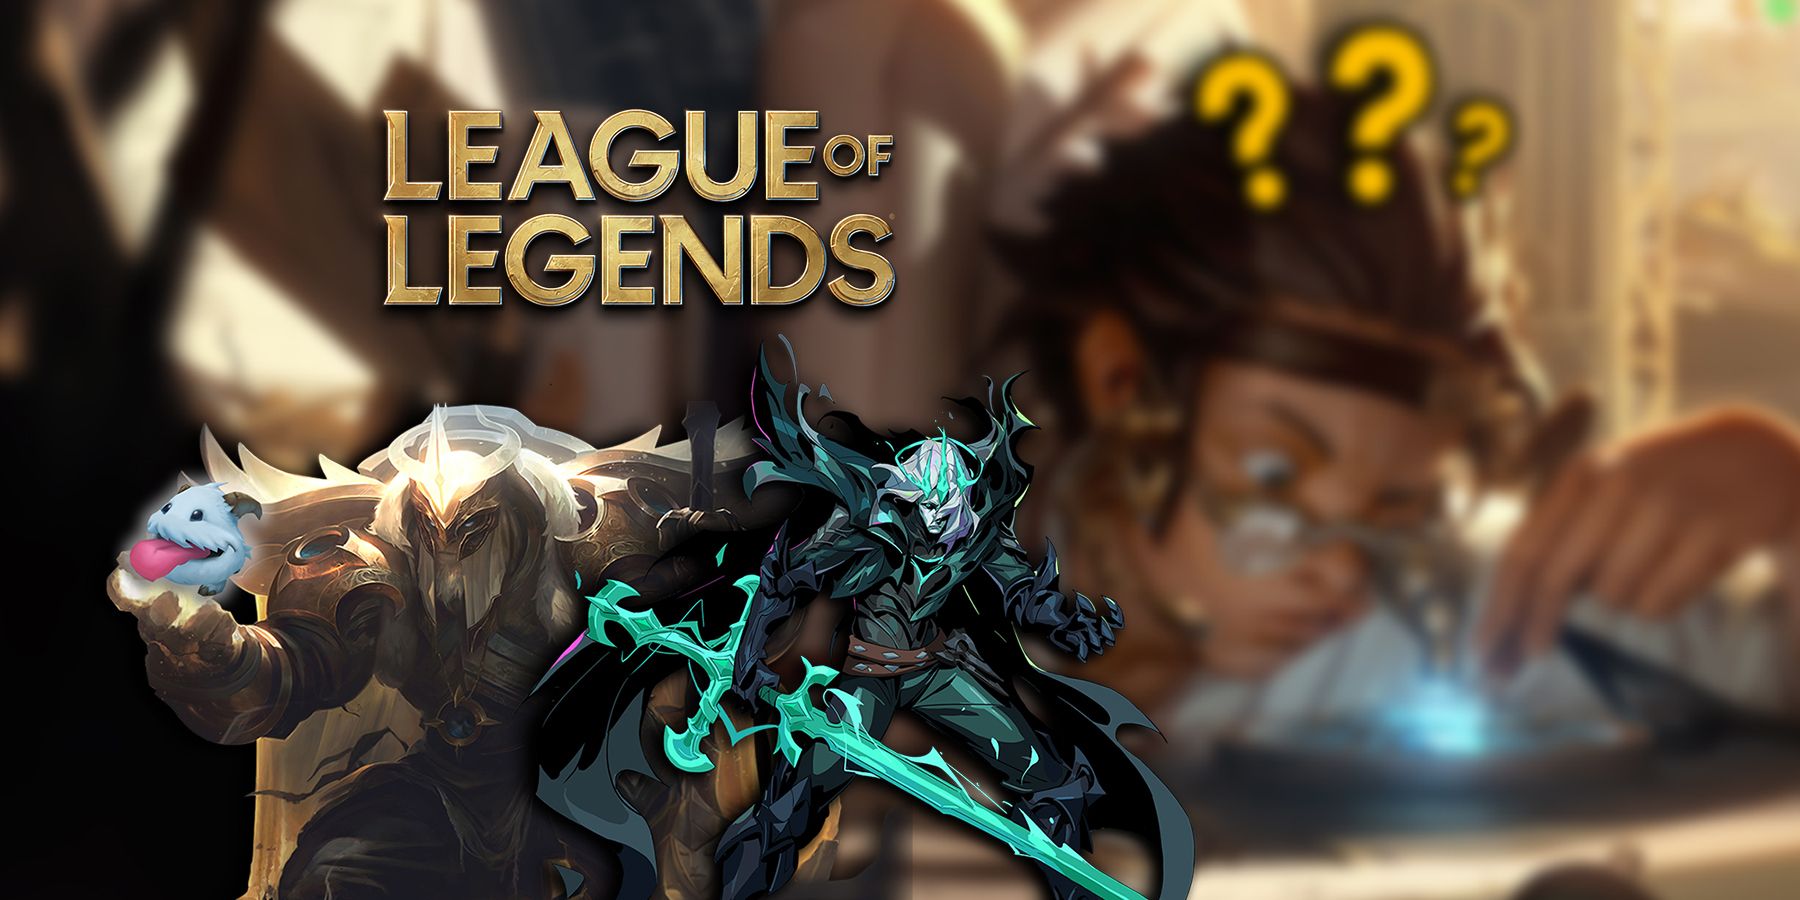 Lore - League of Legends